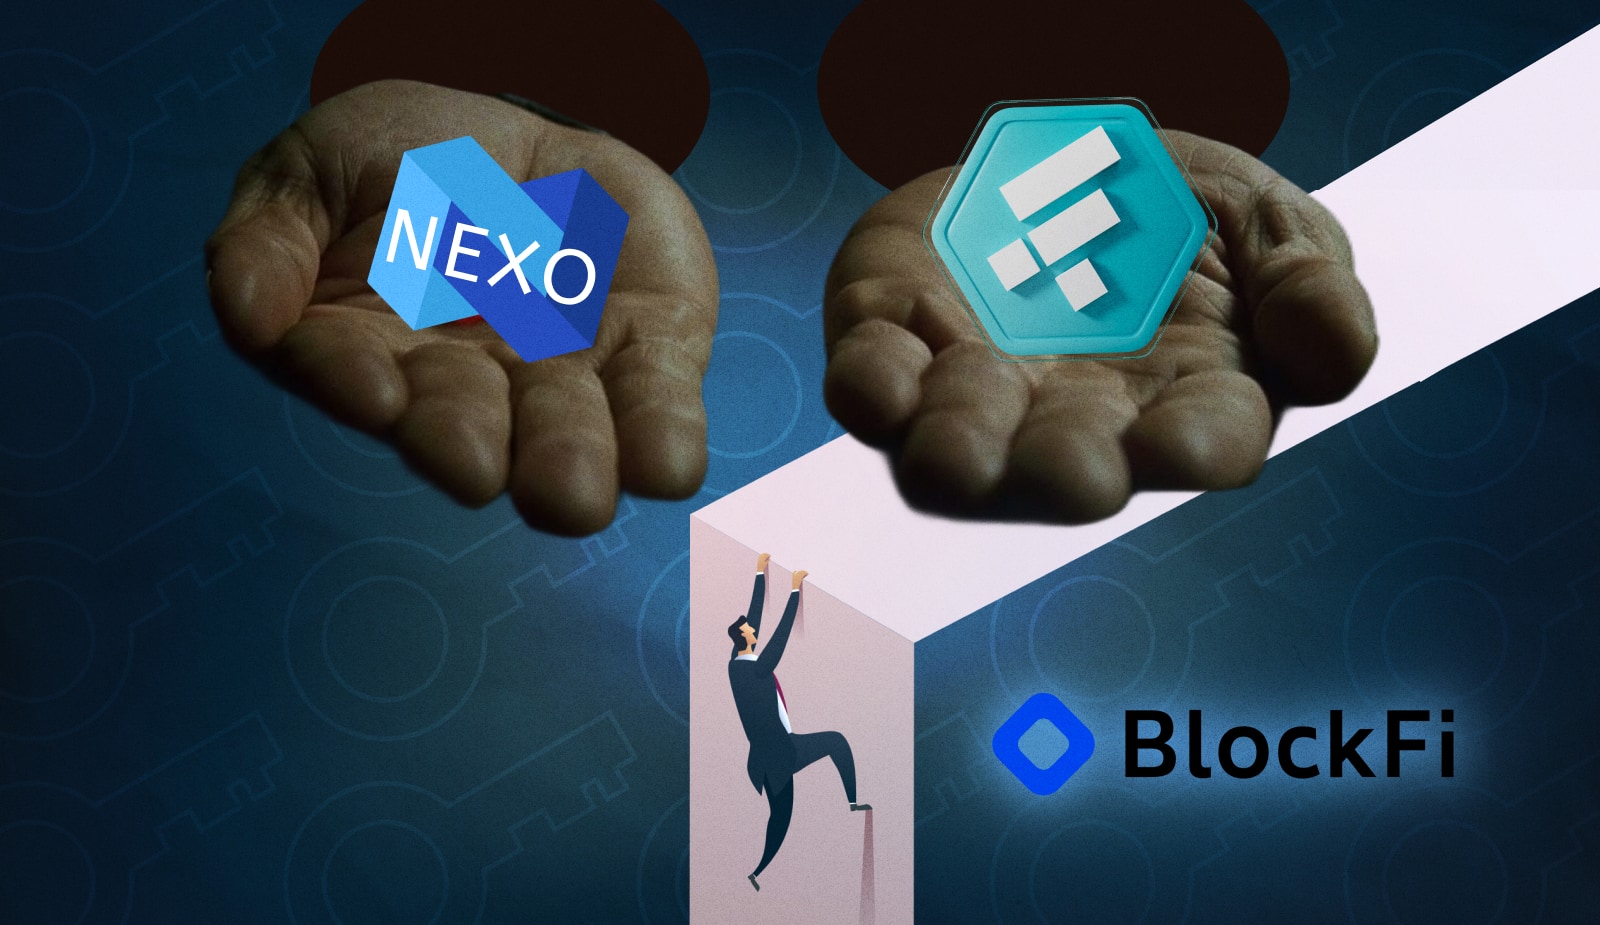 В июле Nexo хотела приобрести BlockFi по цене $850 млн. Заглавный коллаж новости.